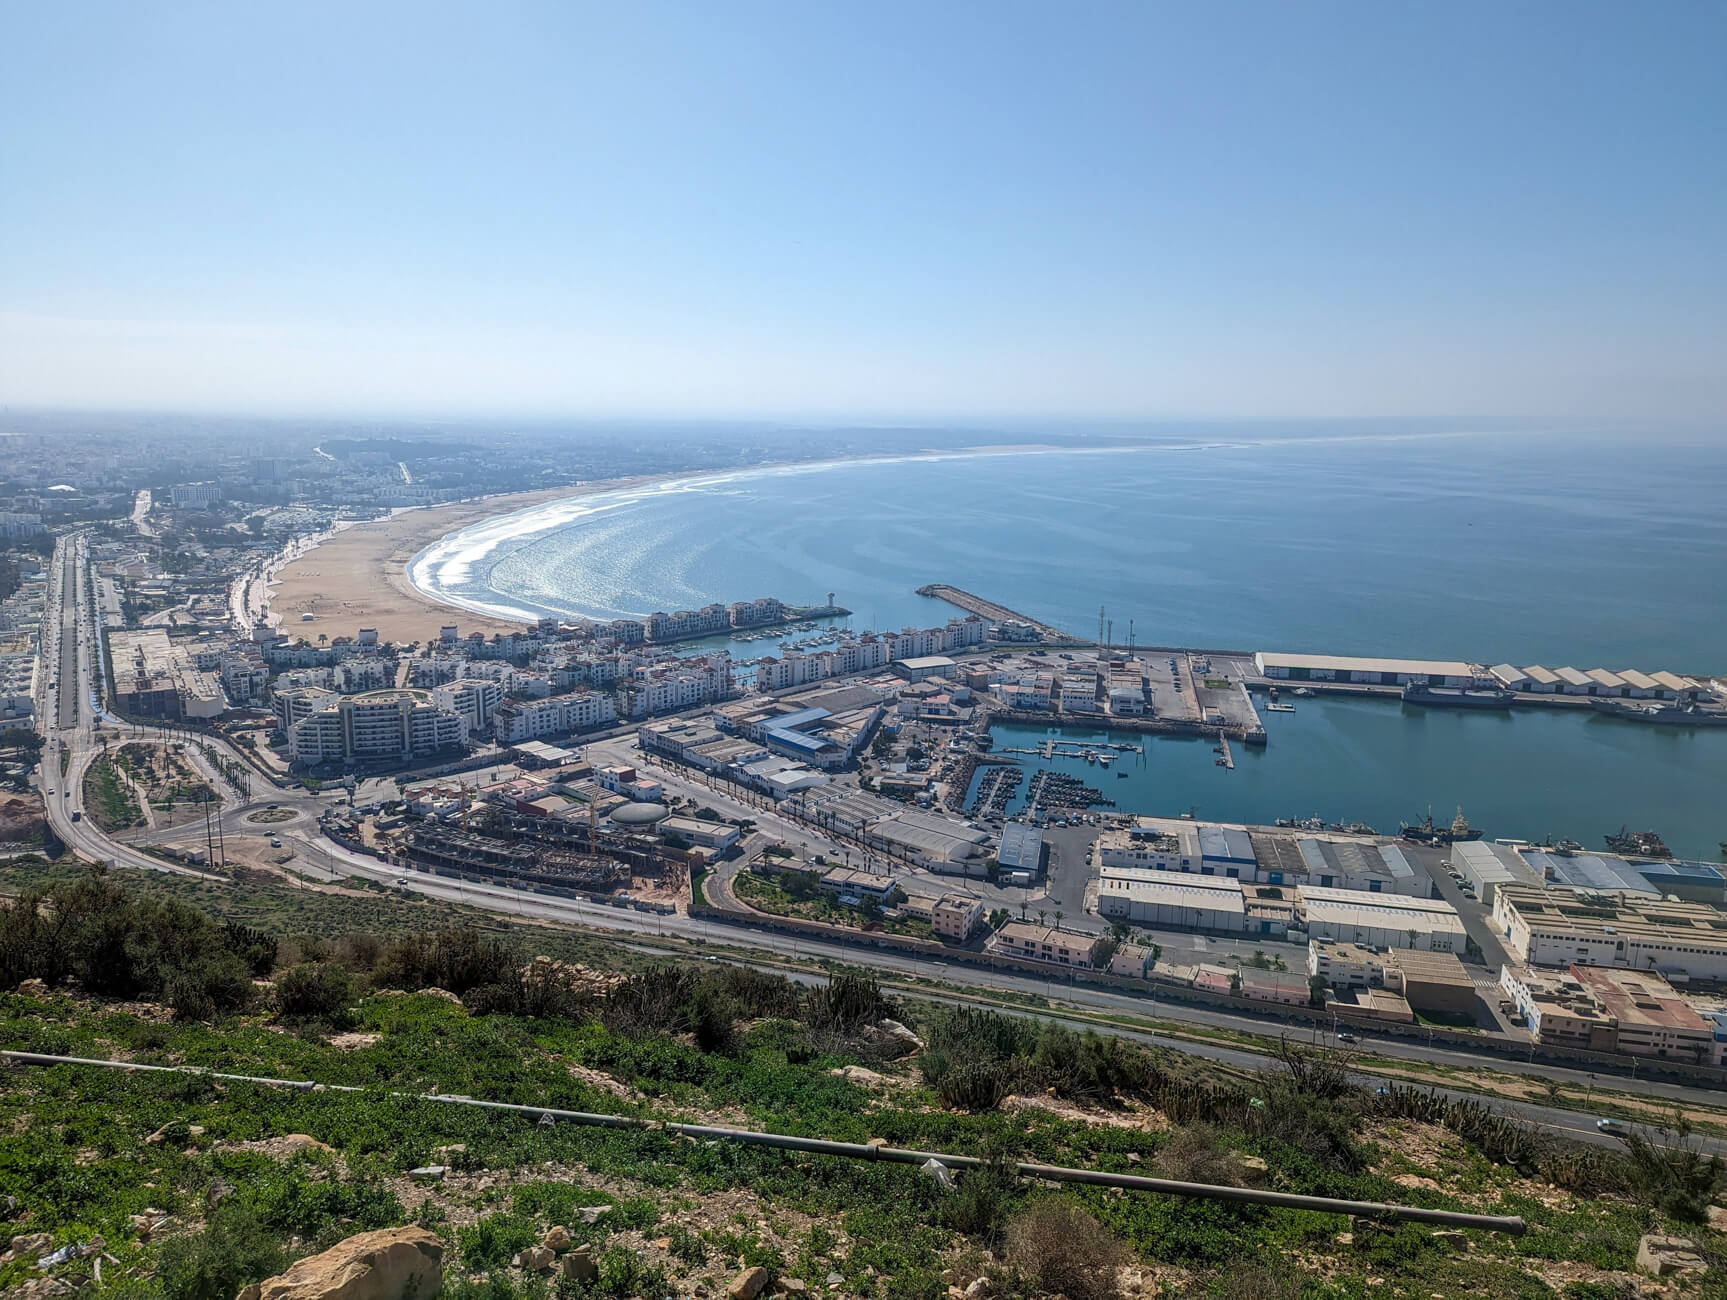 View of Agadir, Morocco